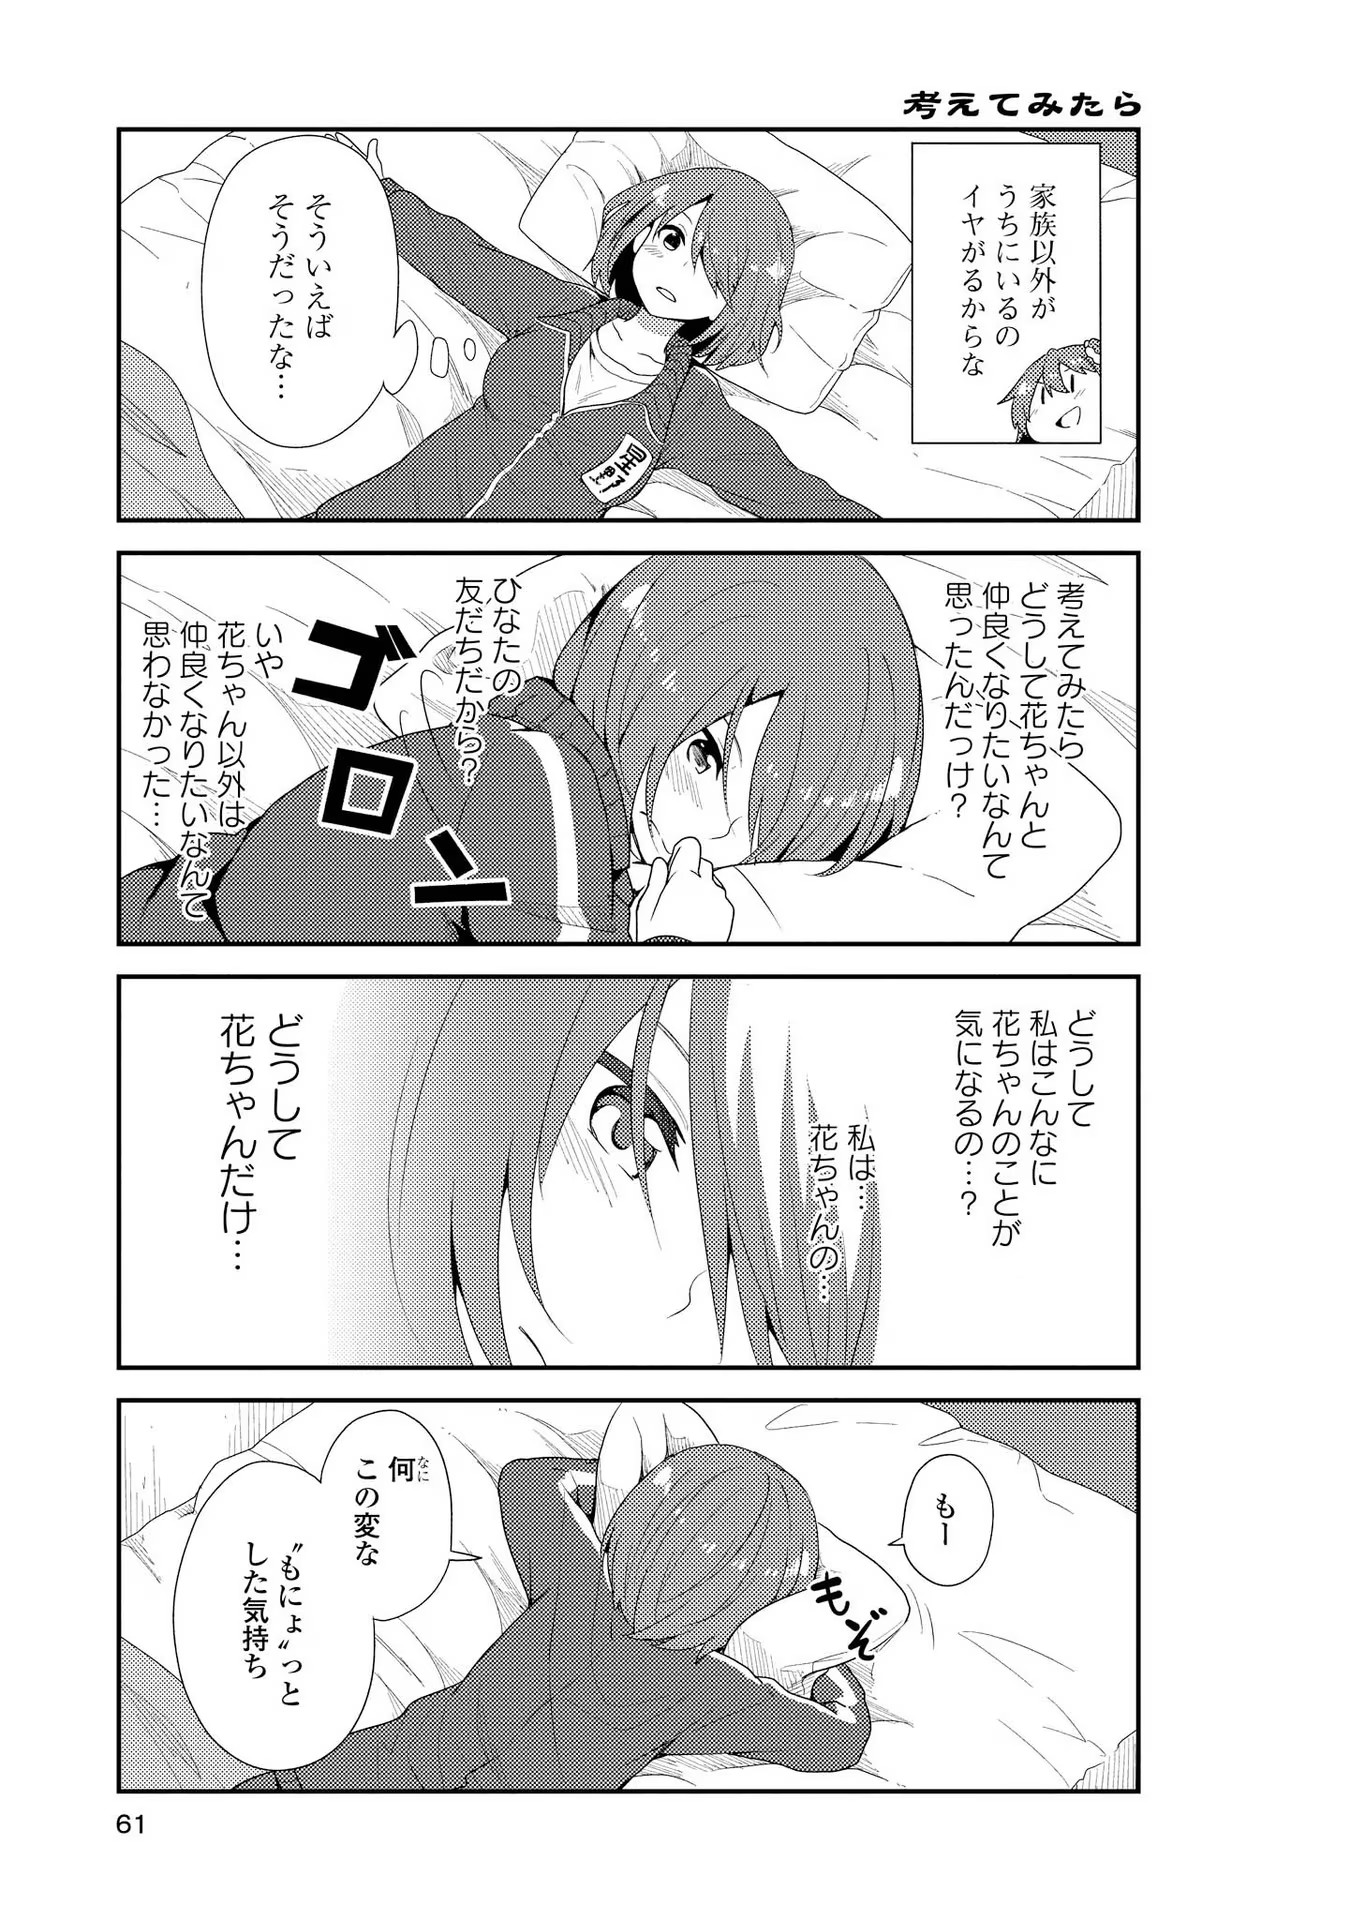 Watashi ni Tenshi ga Maiorita! - Chapter 4 - Page 3